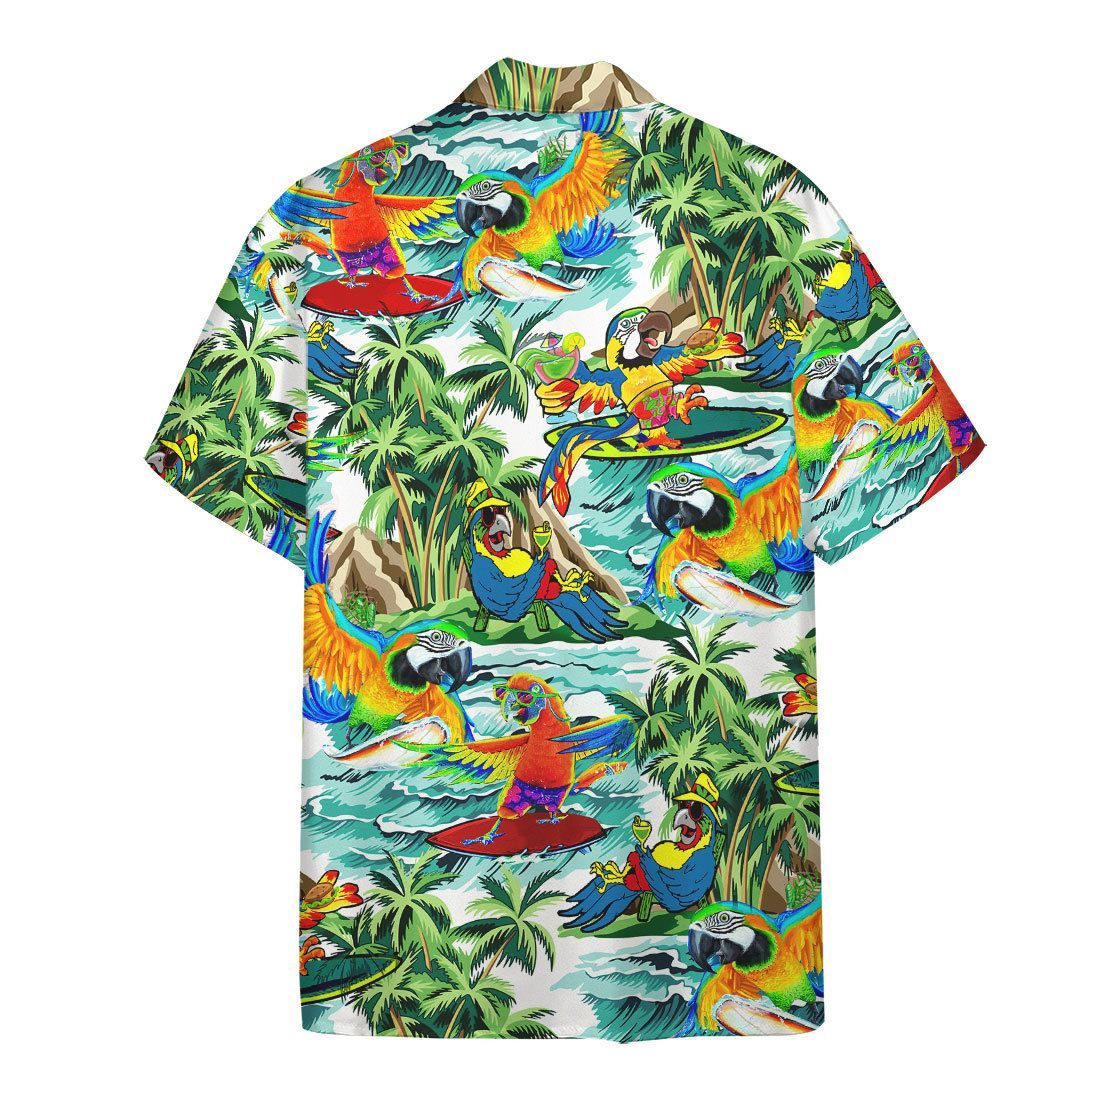 Gearhuman 3D Parrot Surfing Hawaii Shirt ZZ0707211 Short Sleeve Shirt 